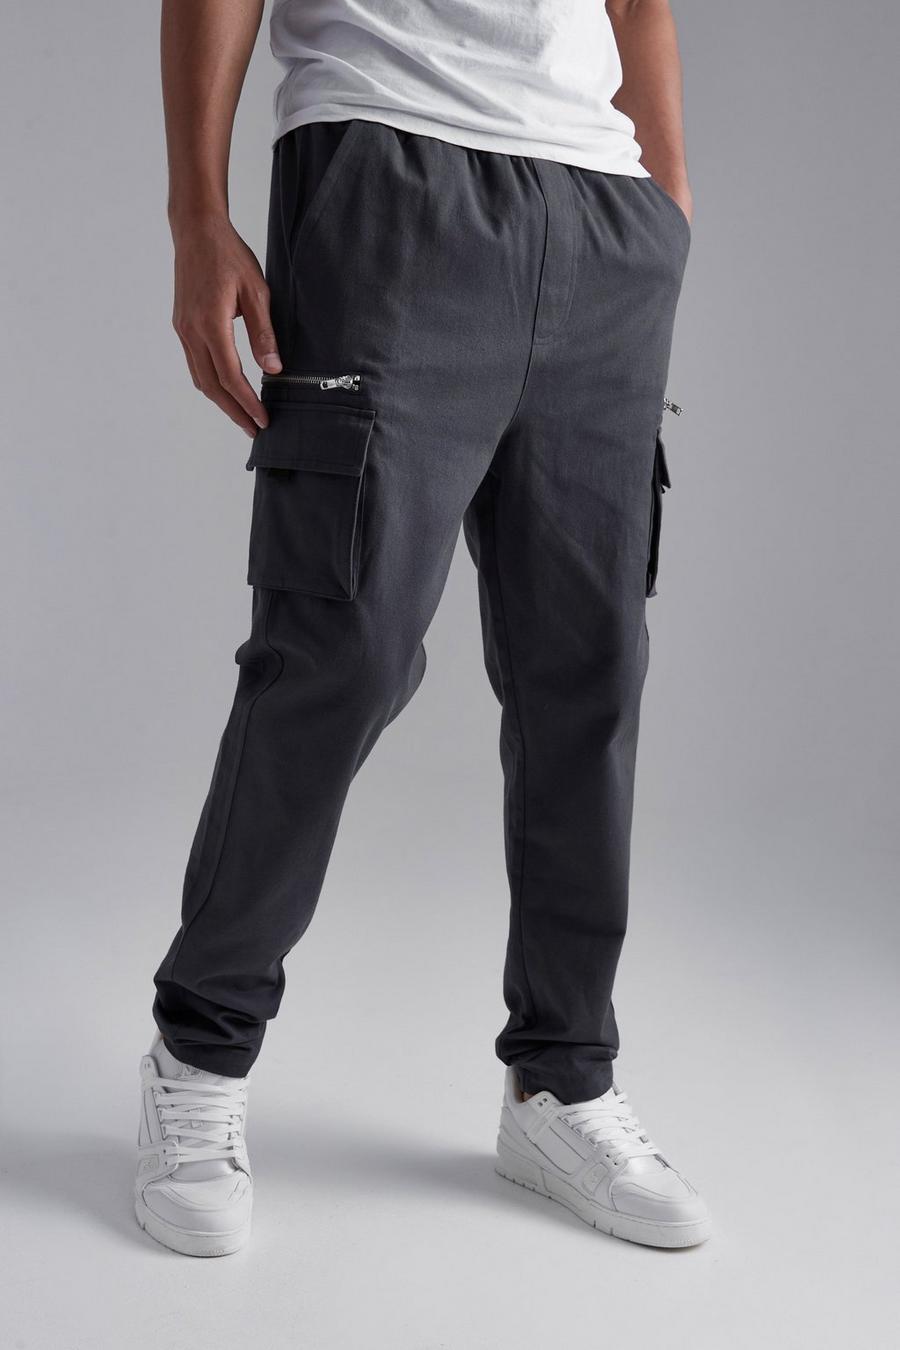 Tall Slim Fit Twill Zip Pocket Cargo Trouser